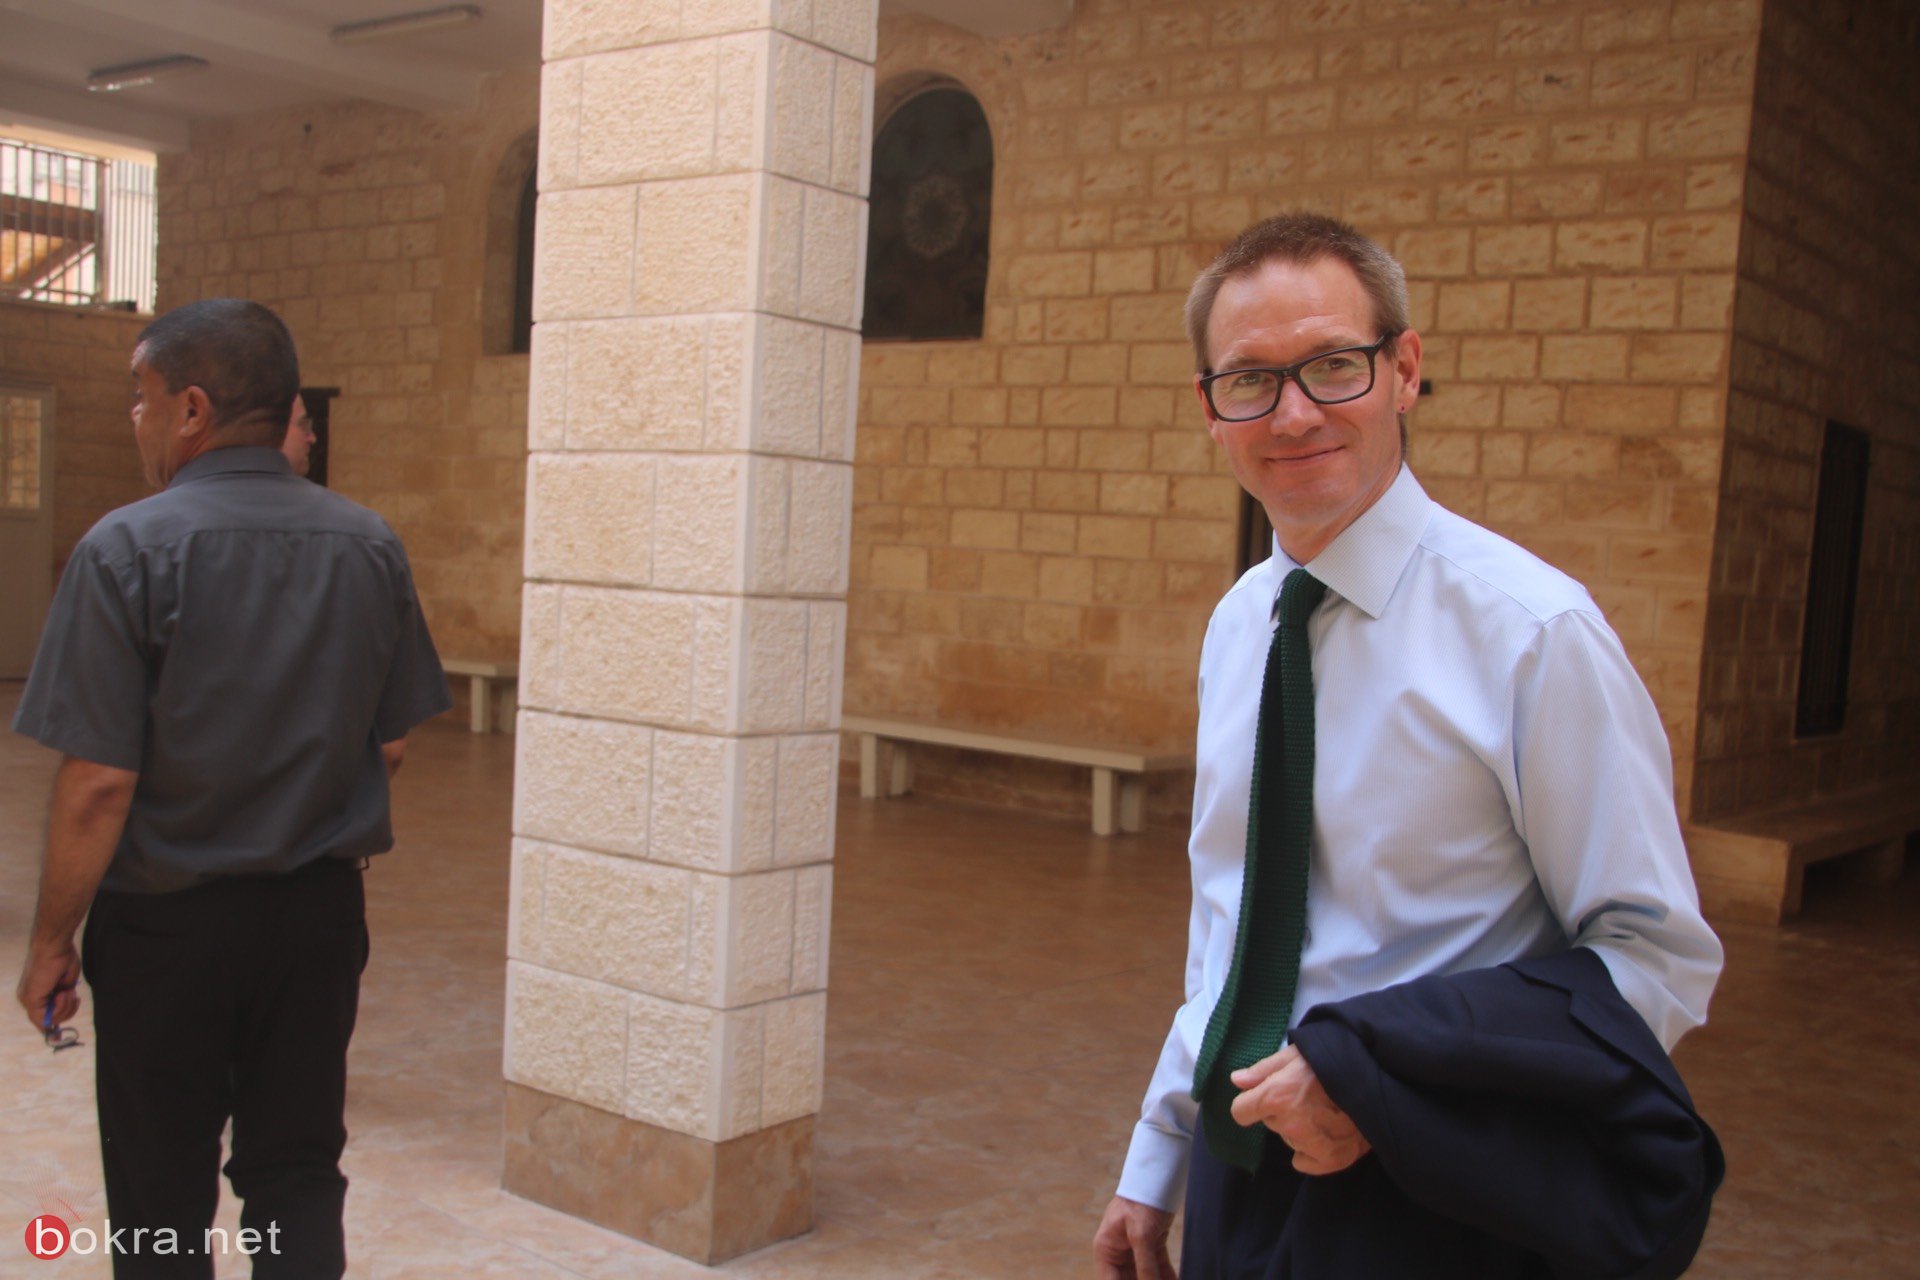 السفير البريطاني الجديد نيل ويچن يزور الناصرة وهذا ما قاله لـ"بُكرا"-30